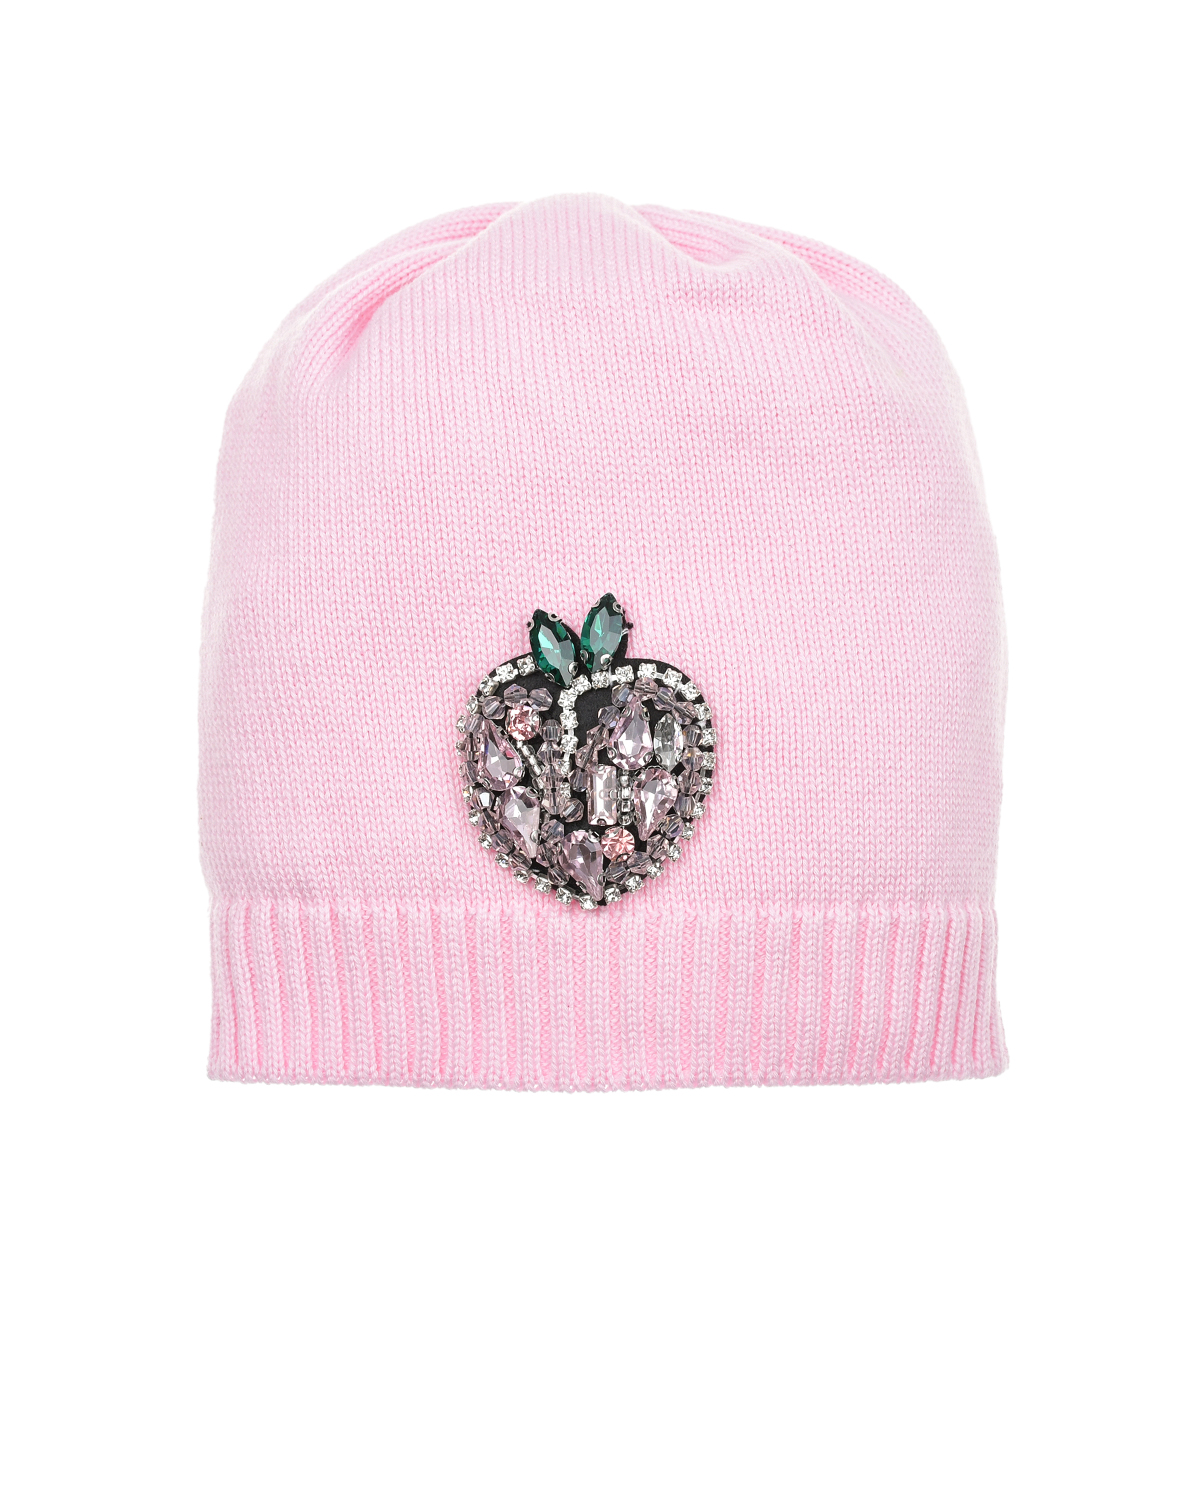 Розовая шапка со стразами Regina шапка с зайцем из камней светло розовая regina